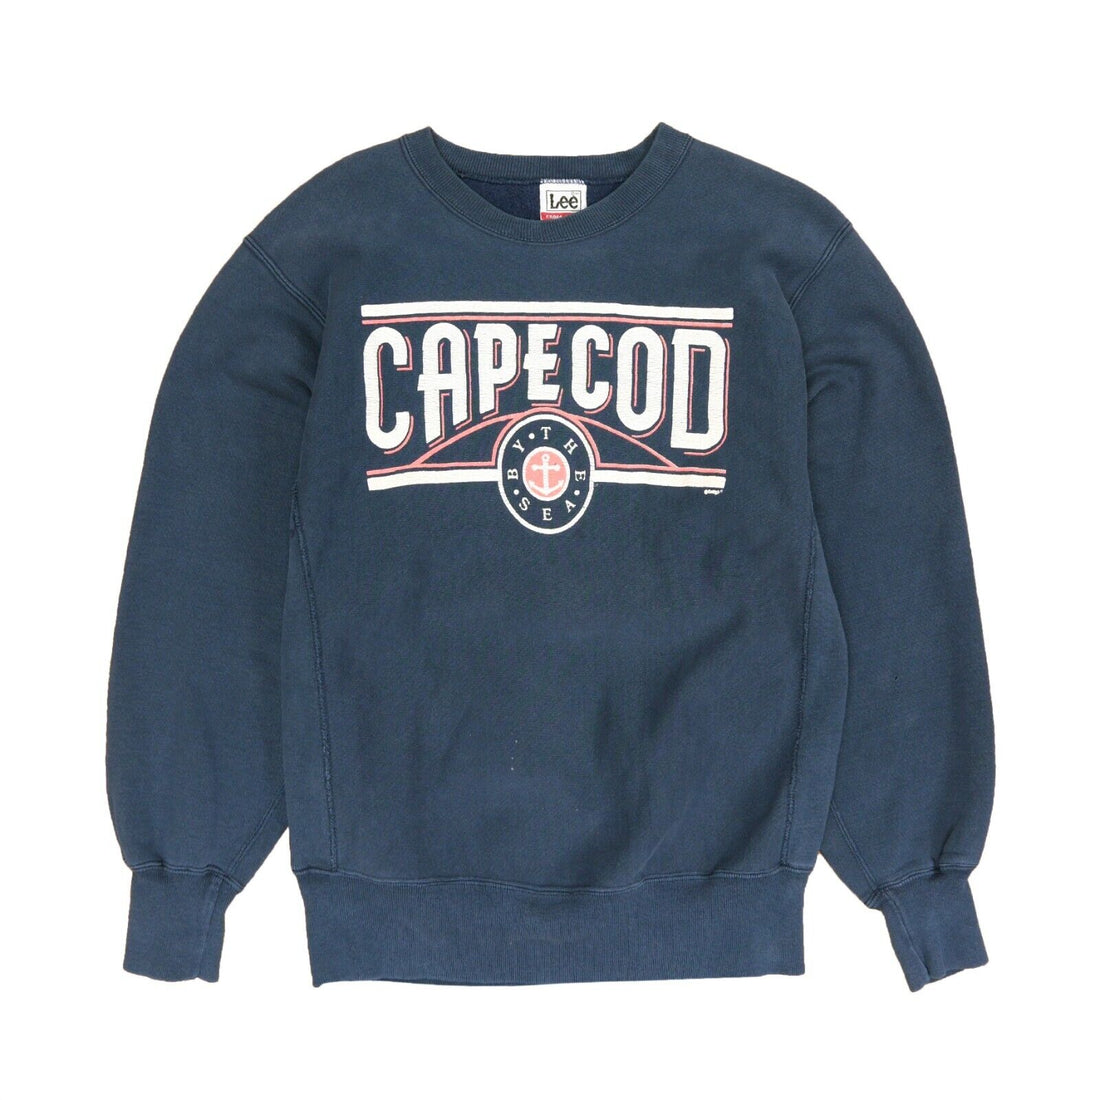 Vintage Cape Cod By The Sea Sweatshirt Crewneck Size Large Blue